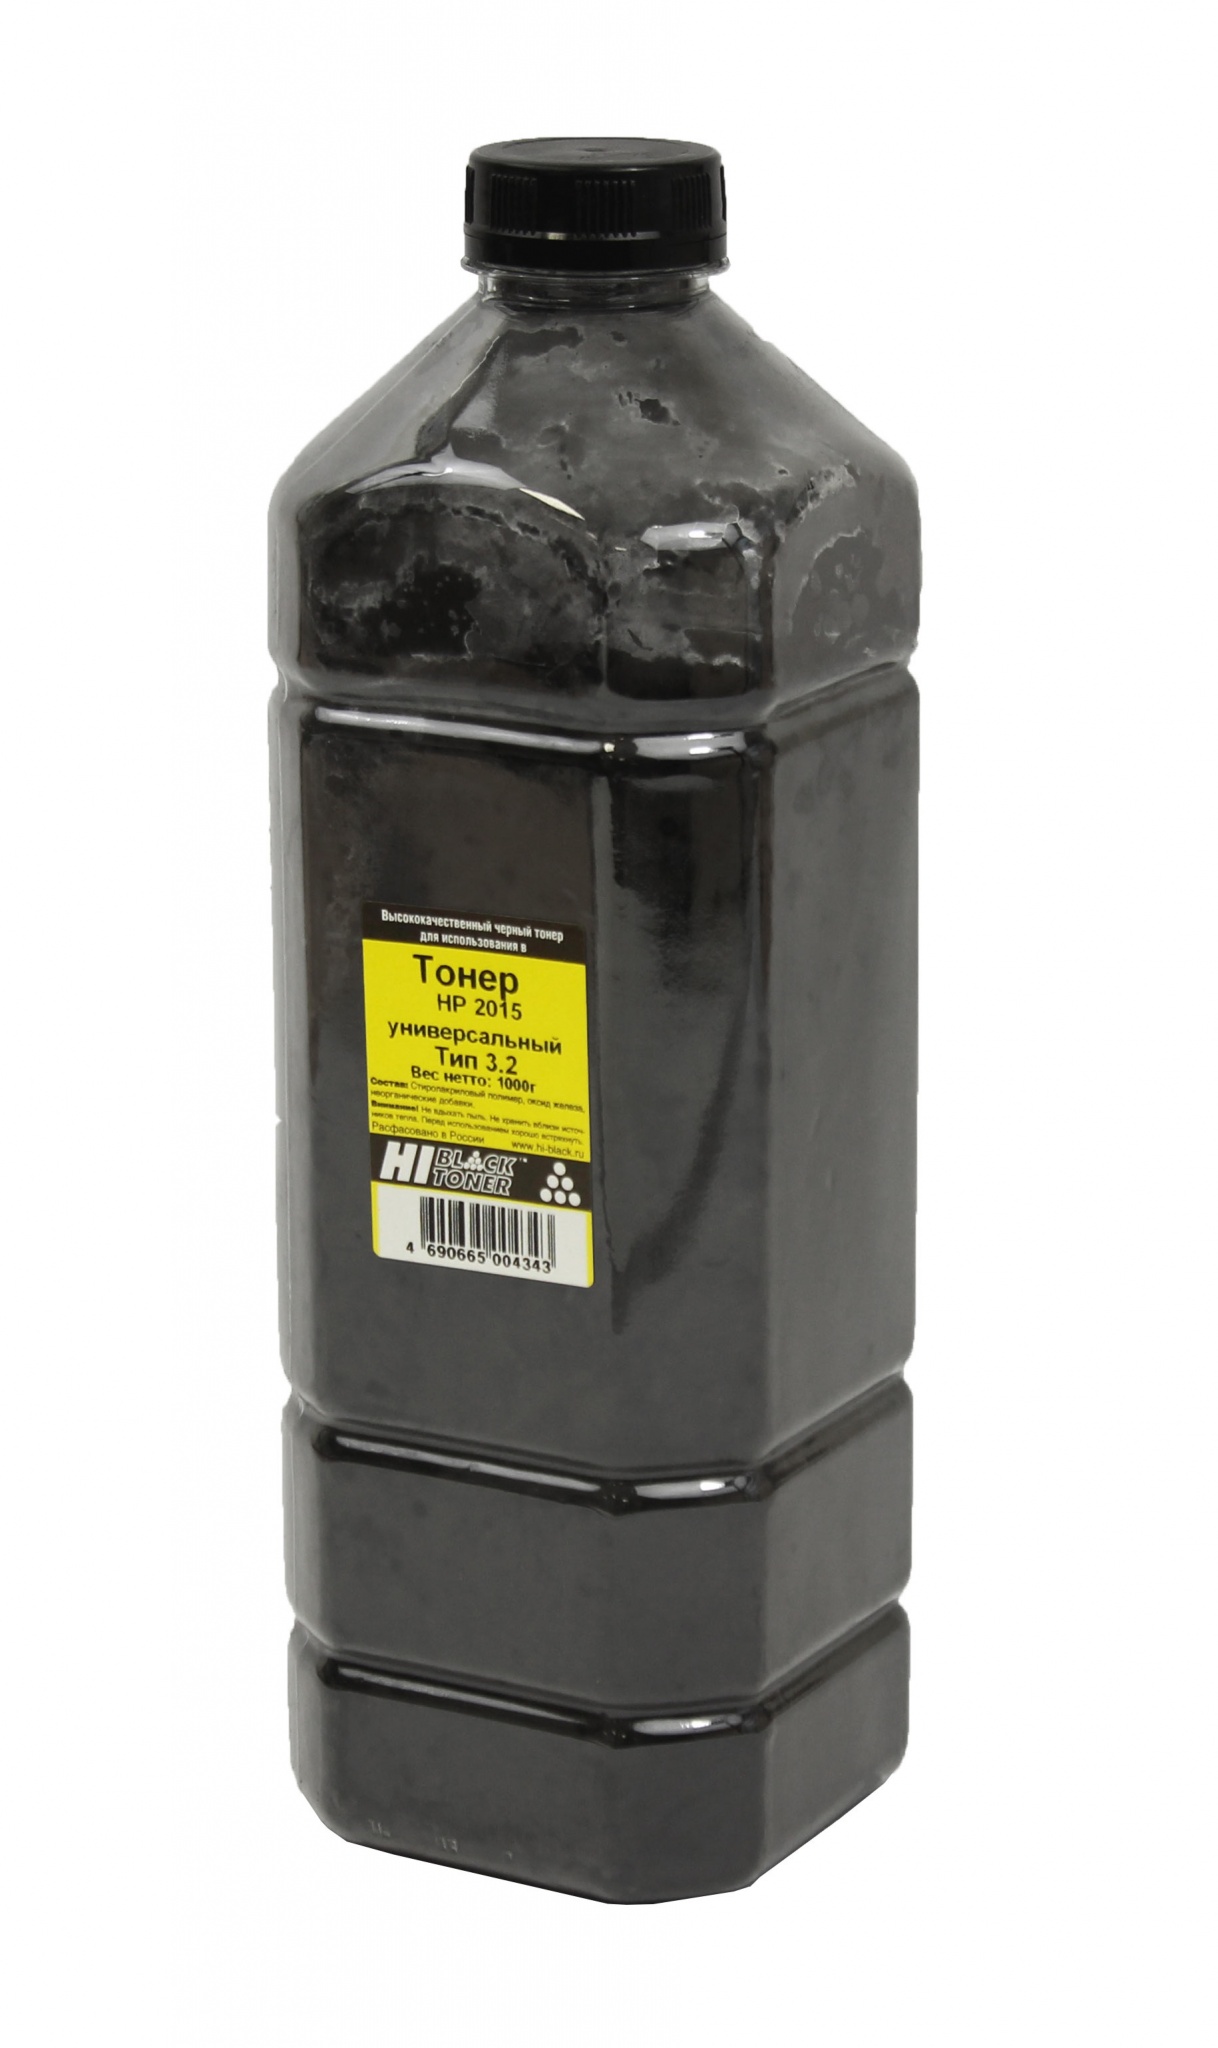 Тонер универсальный Hi-Black (Q5949A) для HP LJ 1160/ P2015, Тип 3.2, чёрный (1000 гр.)